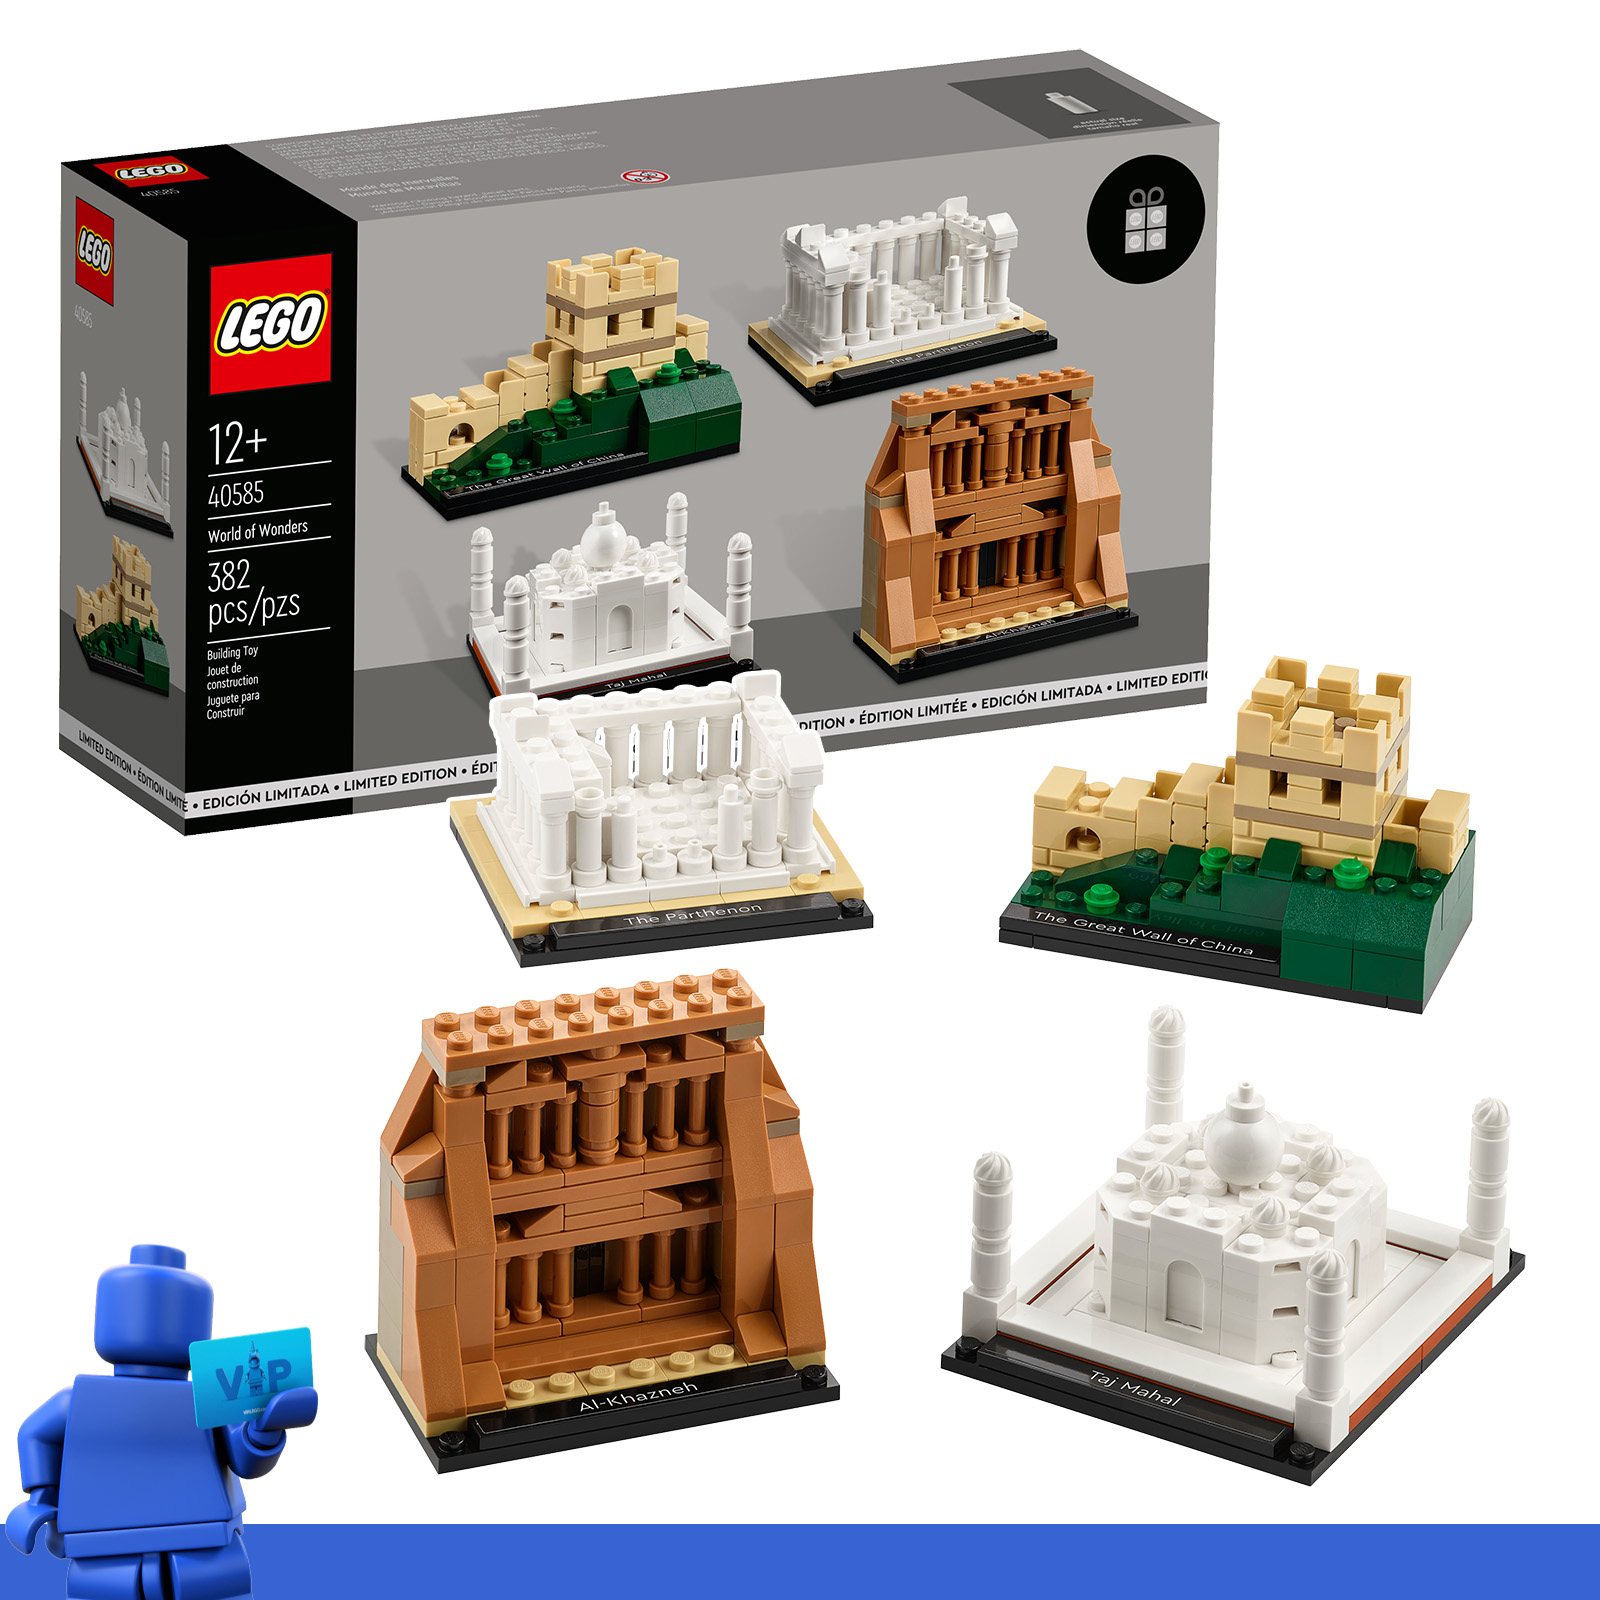 في مركز مكافآت VIP: LEGO تحدد 40584 Birthday Diorama و 40585 World of Wonders متاحة مقابل نقاط VIP